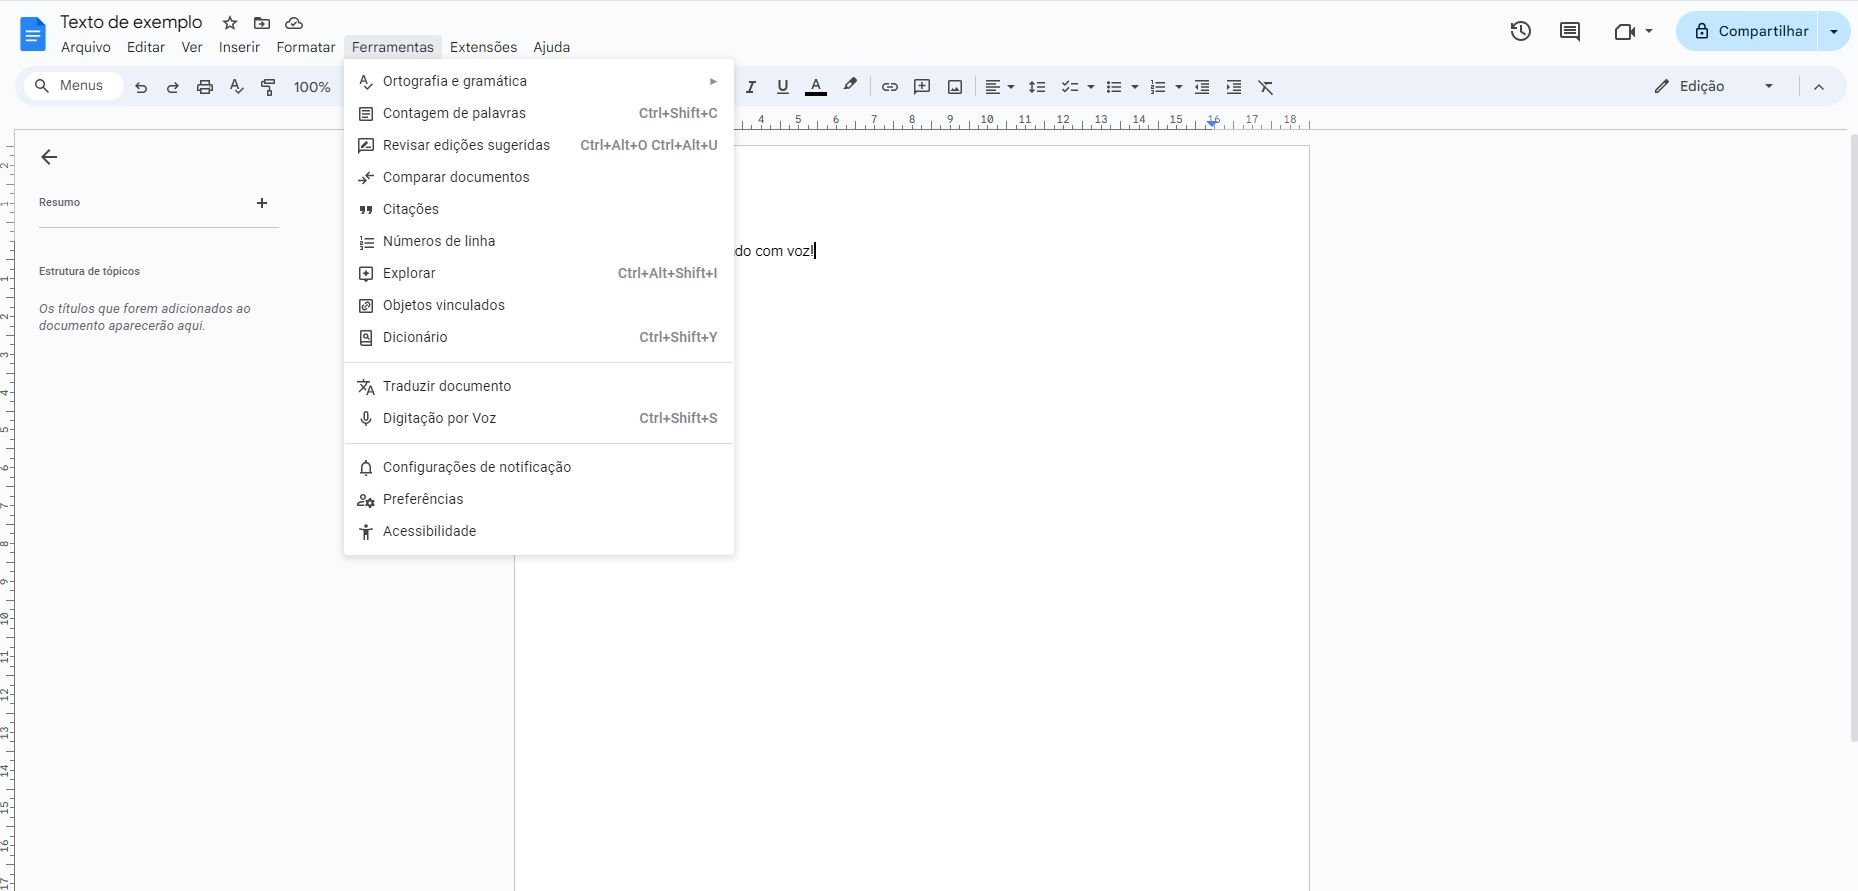 Imagem que mostra um print da interface do Google Docs, editor de textos online da Google. Em destaque, o menu “ferramentas” está selecionado. Em destaque está a opção “digitação por voz”.